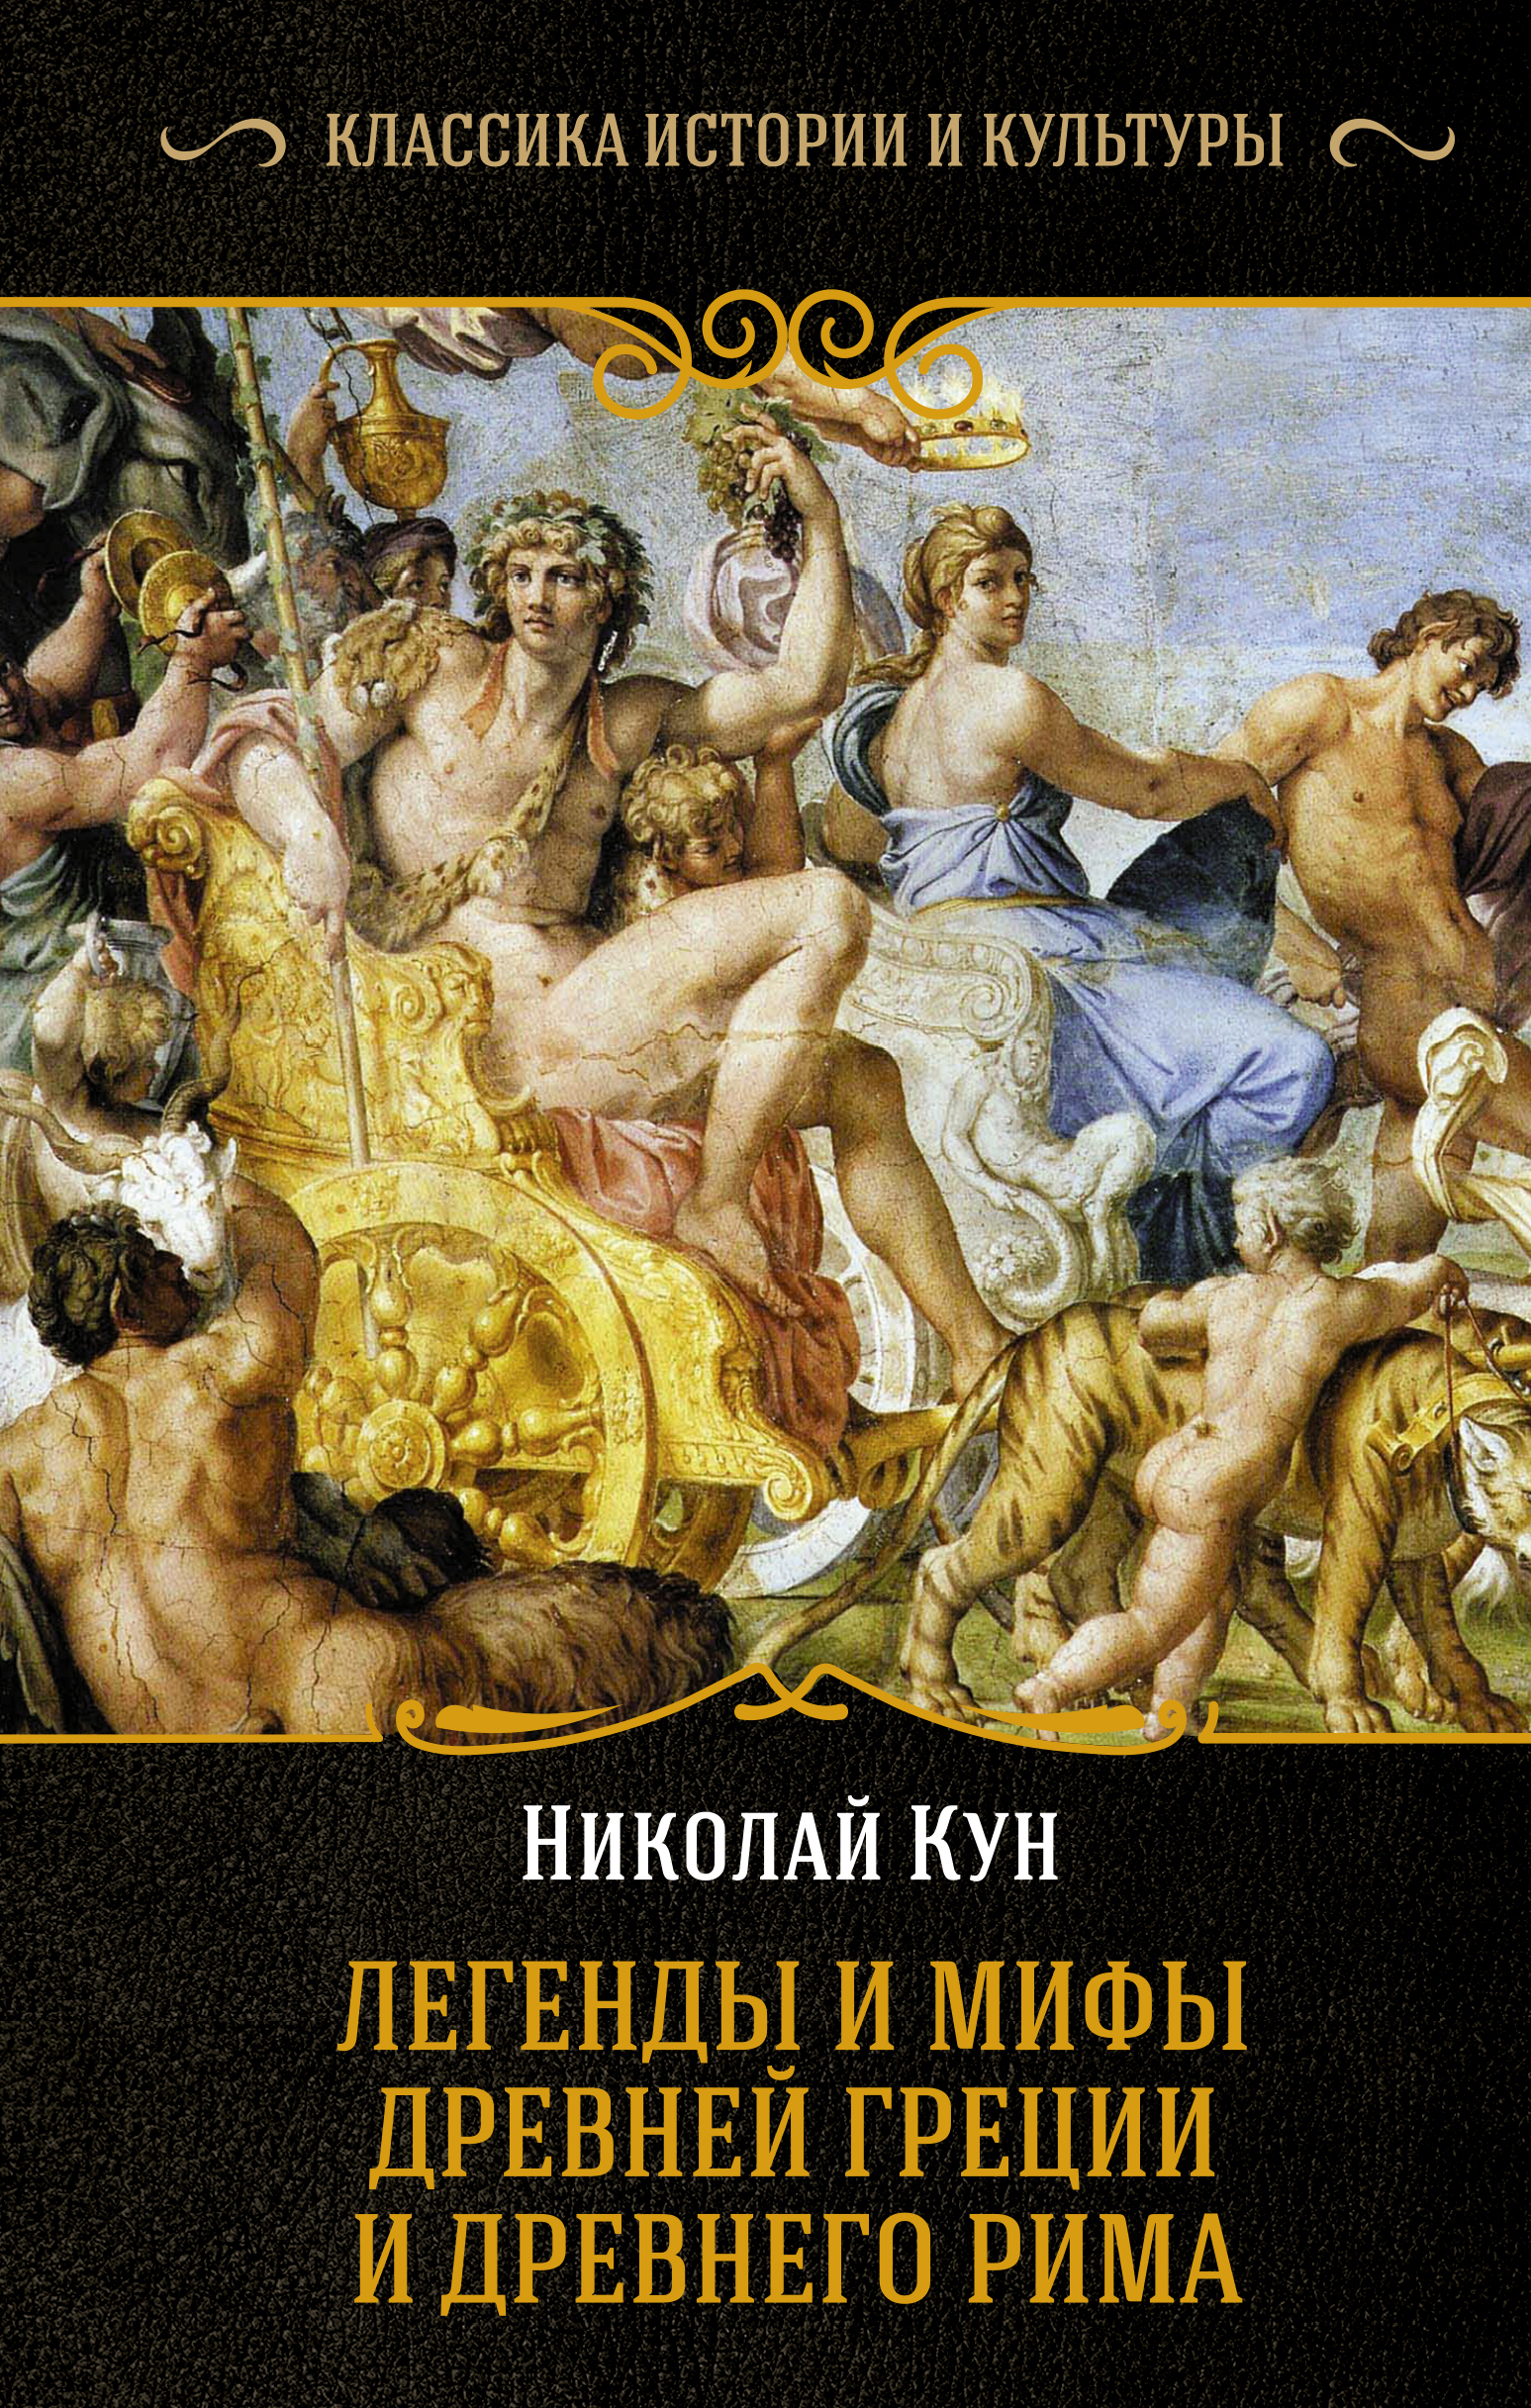 Книга легенды и мифы древней Греции н.а кун. Легенды древней греции и рима